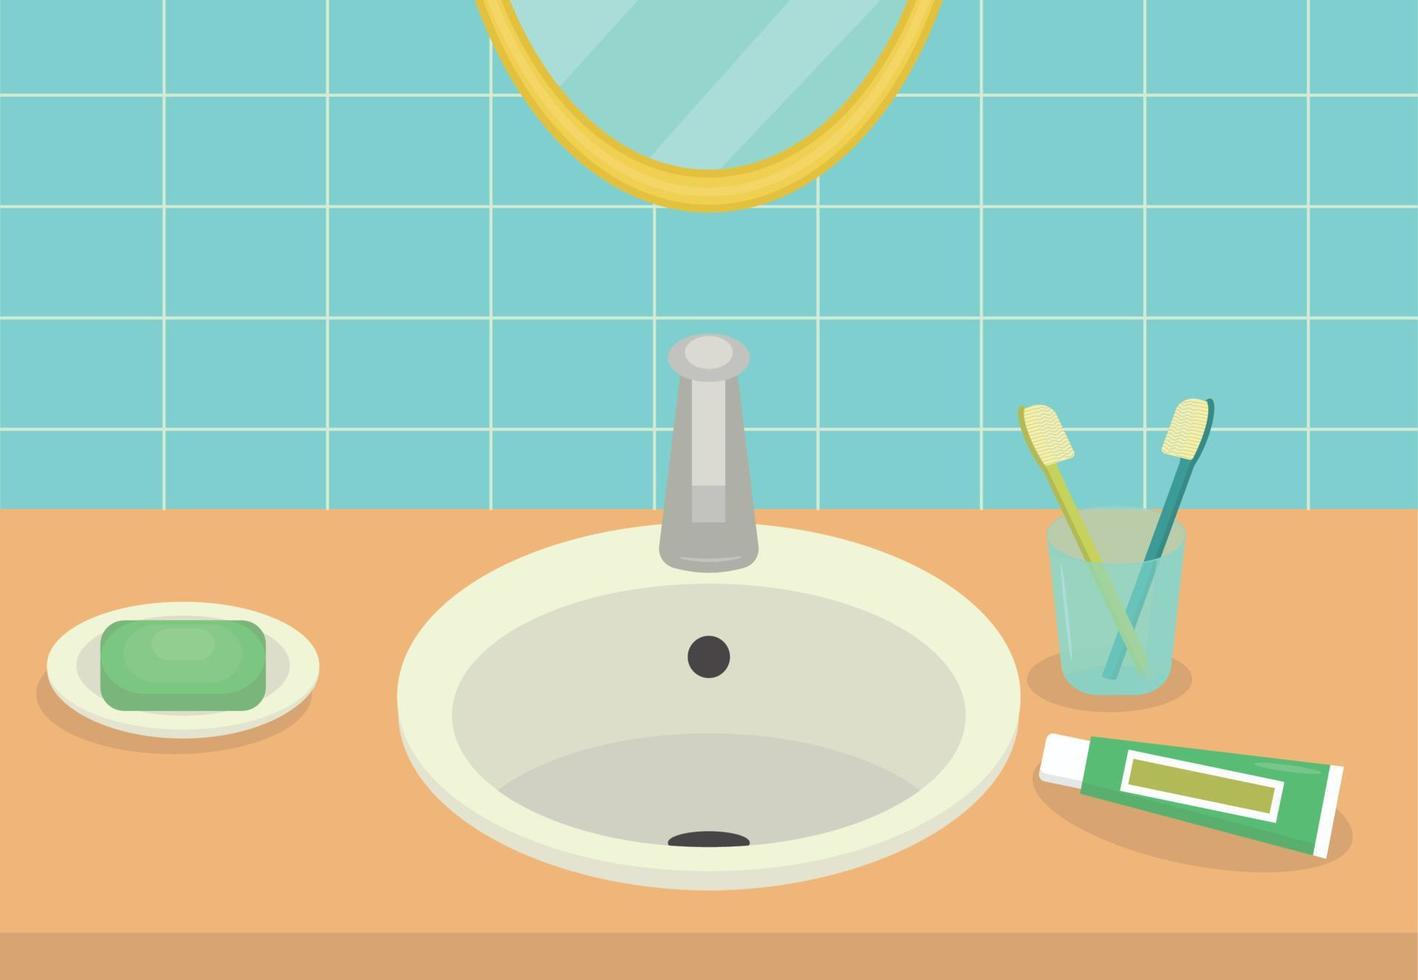 interior minimalista do banheiro. lavatório com sabonete, escovas e pasta de dentes, espelho. ilustração de assunto de vetor plano